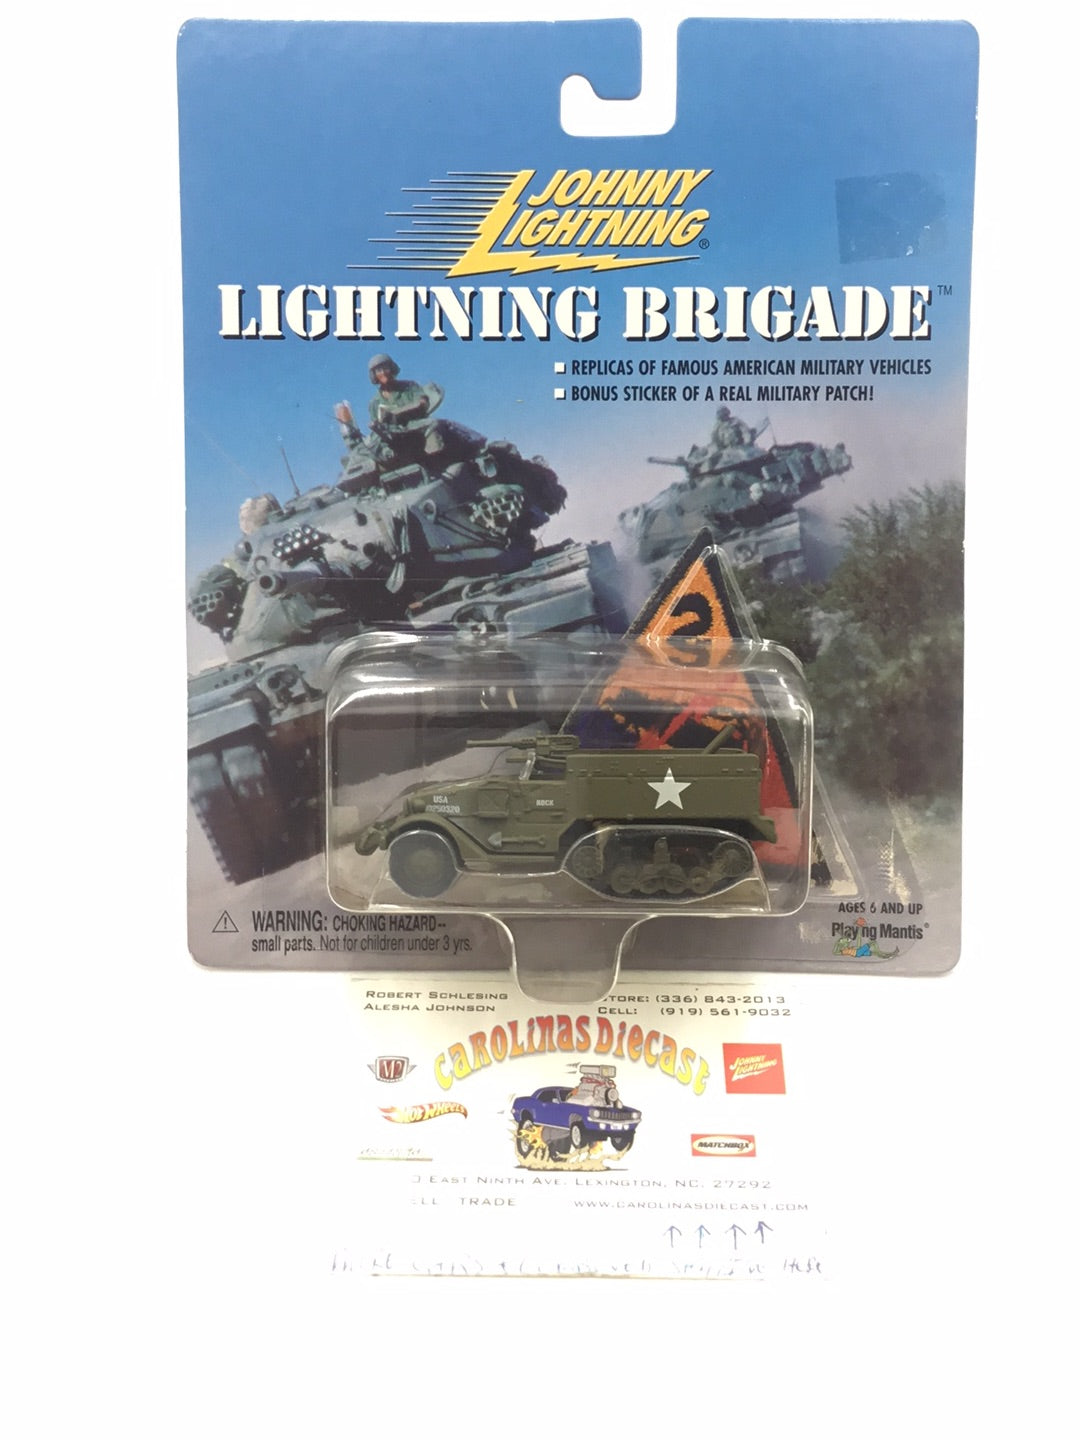 Johnny lightning Lightning Brigade WWII M-16 Anti Aircraft Half Track TT5